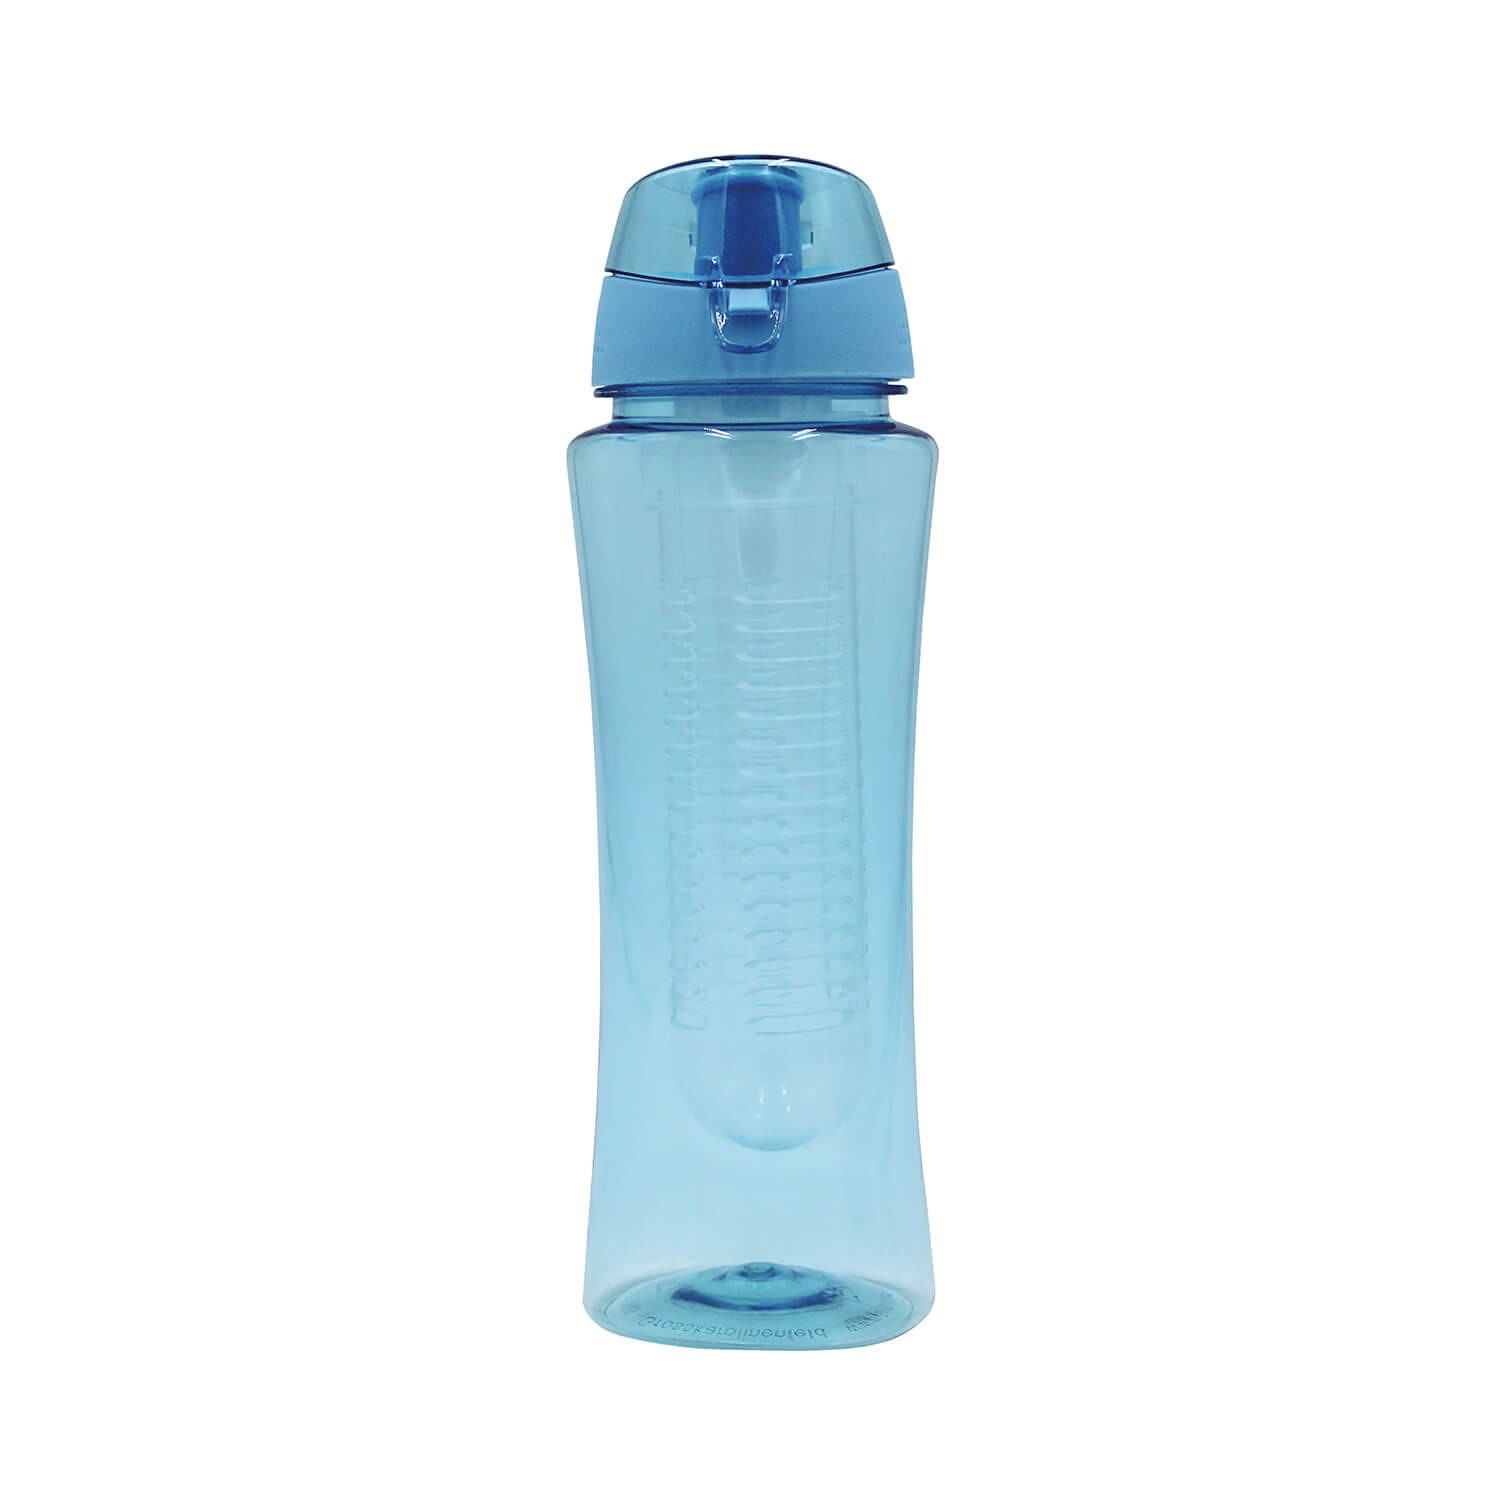 Steuber Trinkflasche Flavour für Sport & Freizeit mit Filtereinsatz, Schraubverschluss und Tragelasche, 700ml, hellblau